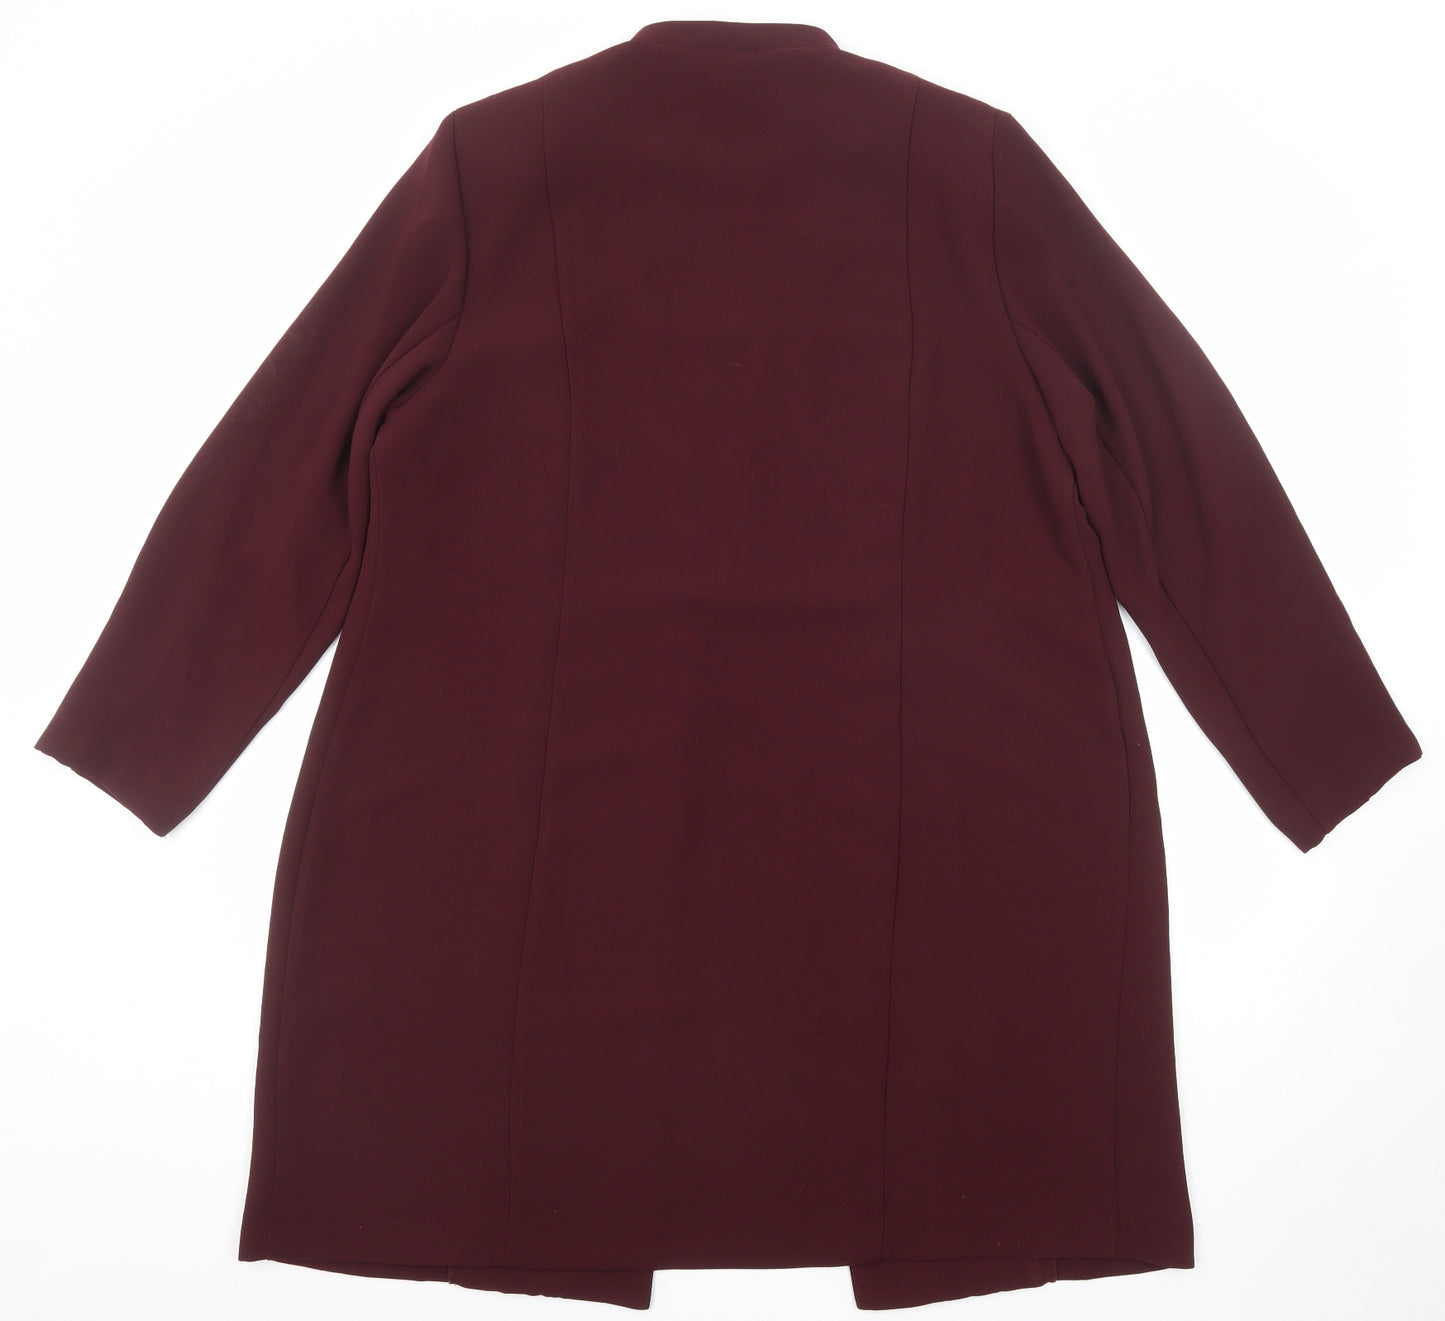 Premier Womens Red Jacket Blazer Size 20 Hook & Eye - Longline